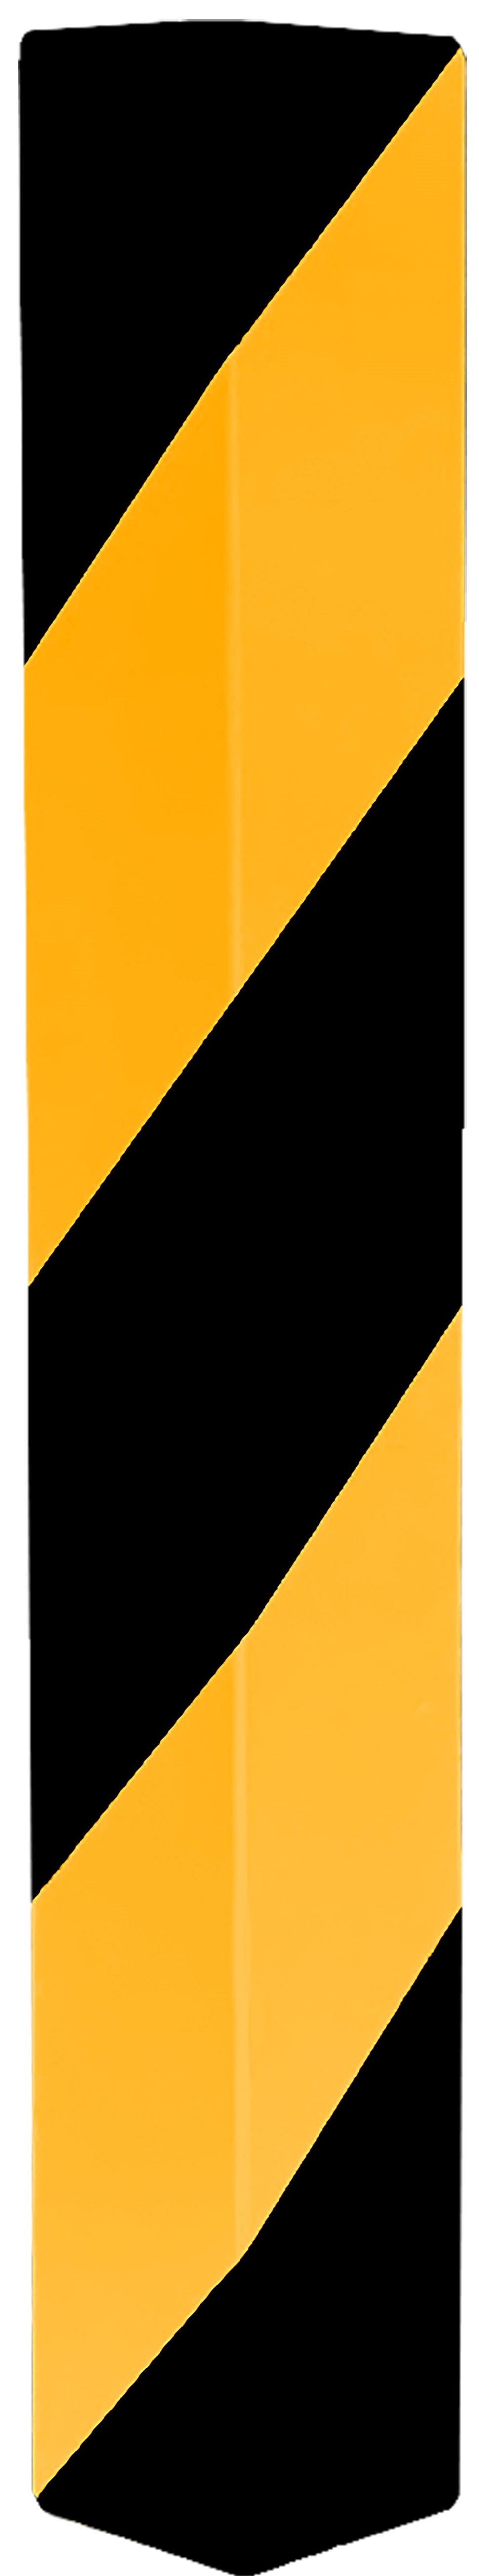 Schake Kantenschutzwinkel Alu gelb | schwarz linksweisend - 1000 mm